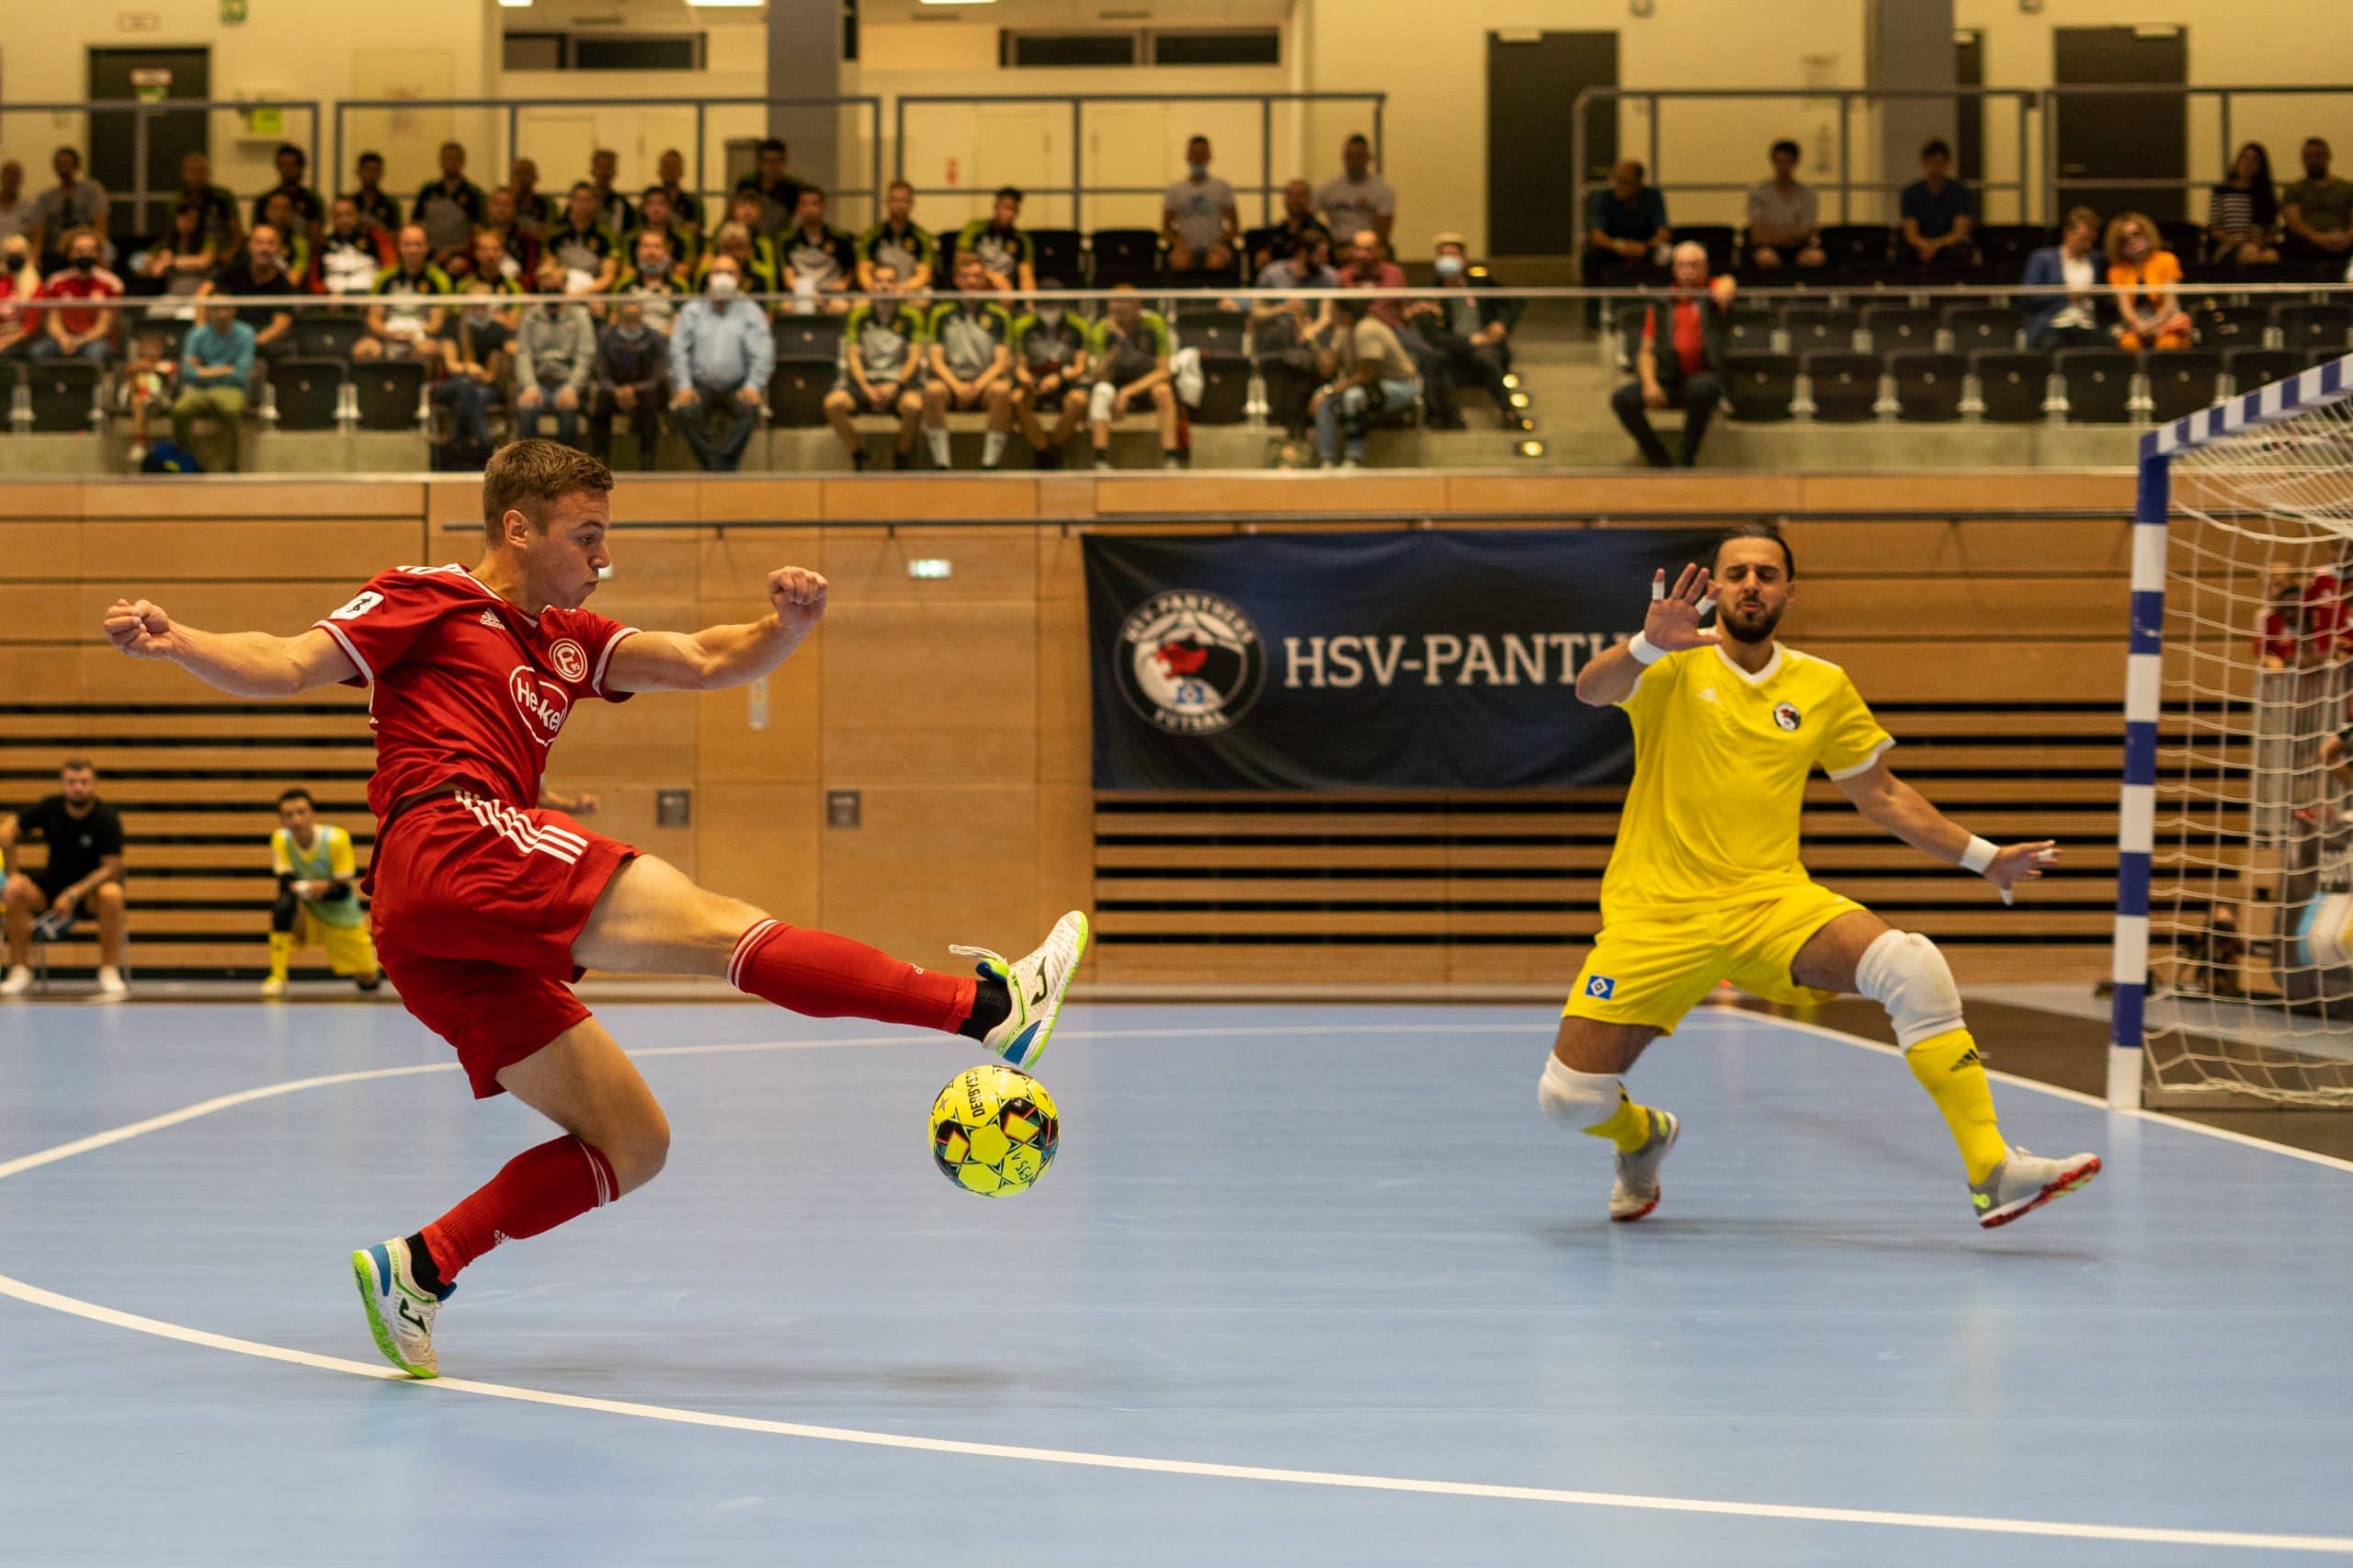 DSC03144 scaled - Die Futsal-Bundesliga geht in die Playoffs | Eine spannende Premierensaison im Überblick